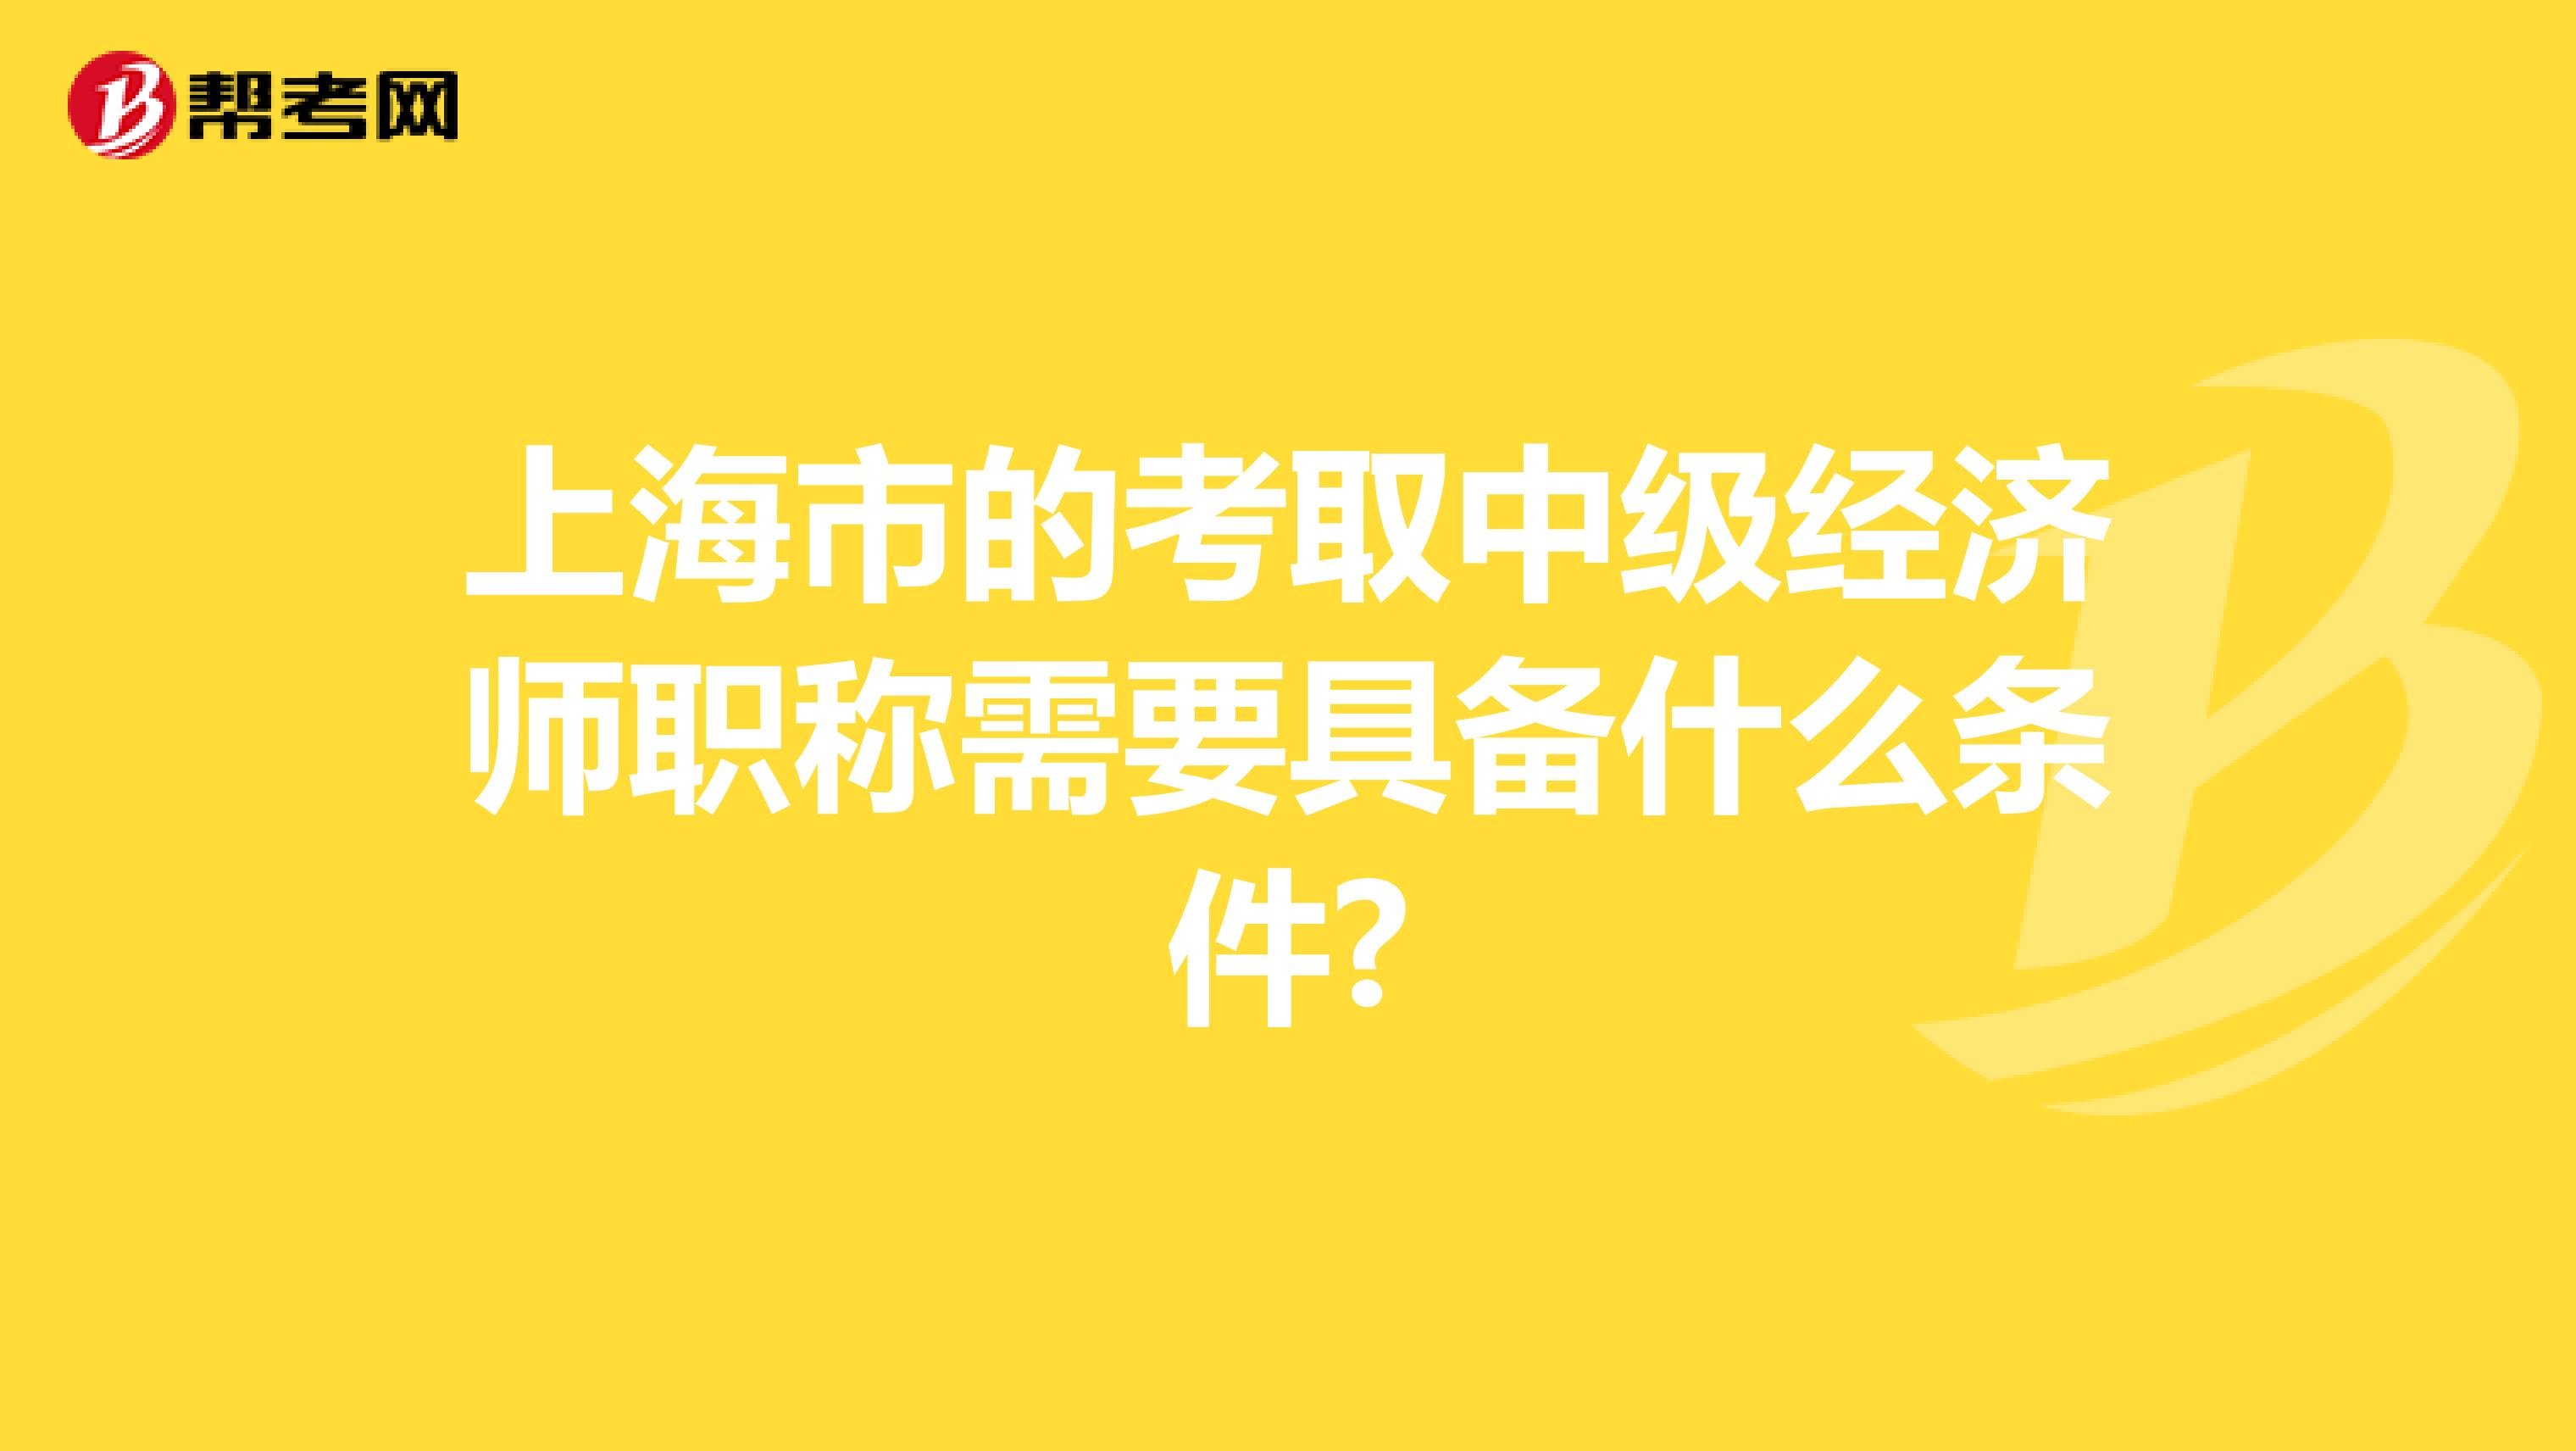 上海市的考取中级经济师职称需要具备什么条件?